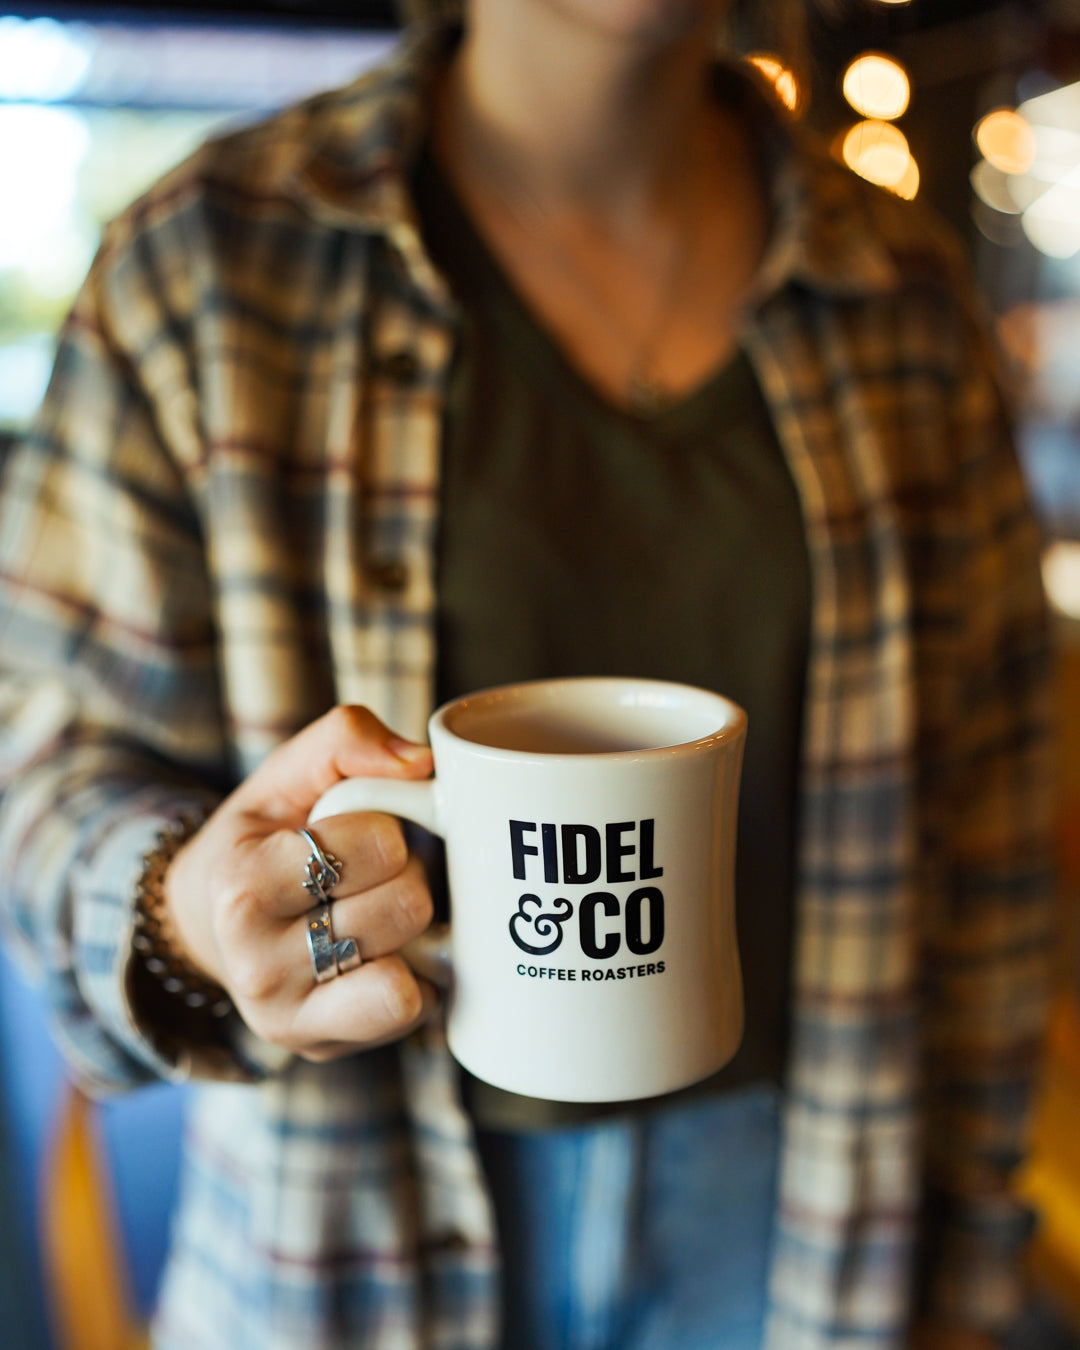 Fidel & Co Military Mug